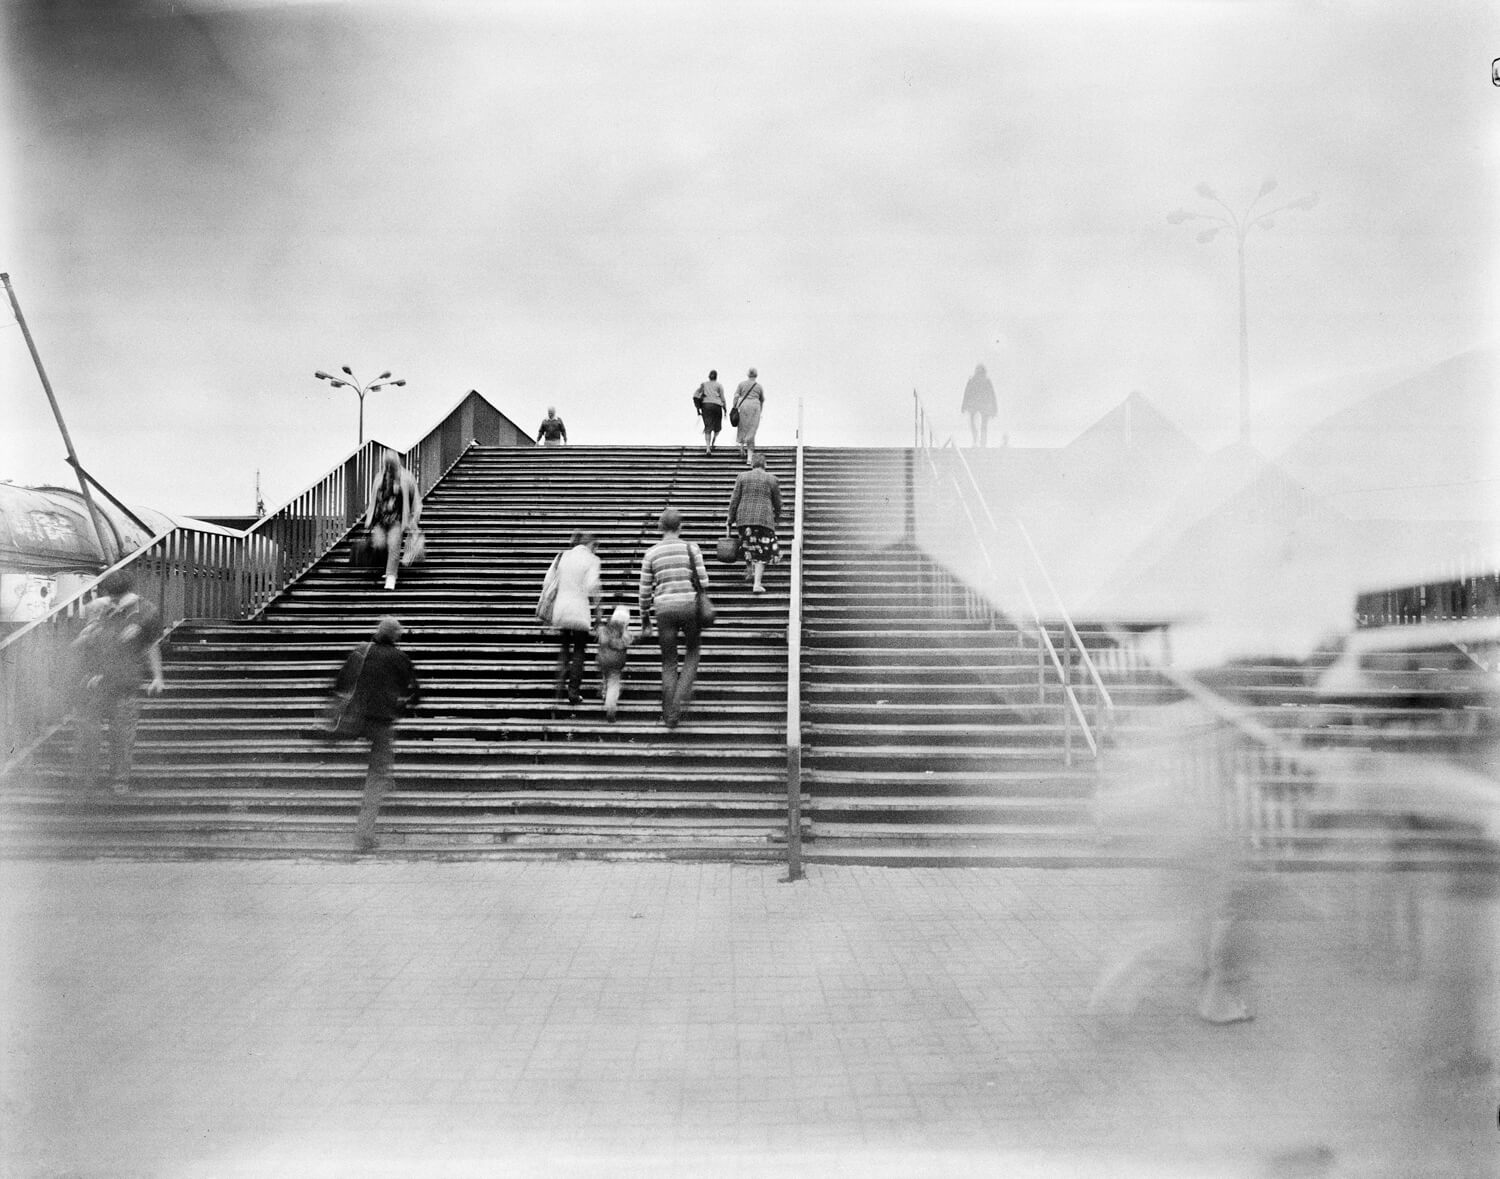 Ludzie chodzący po schodach nad przejazdem kolejowym.